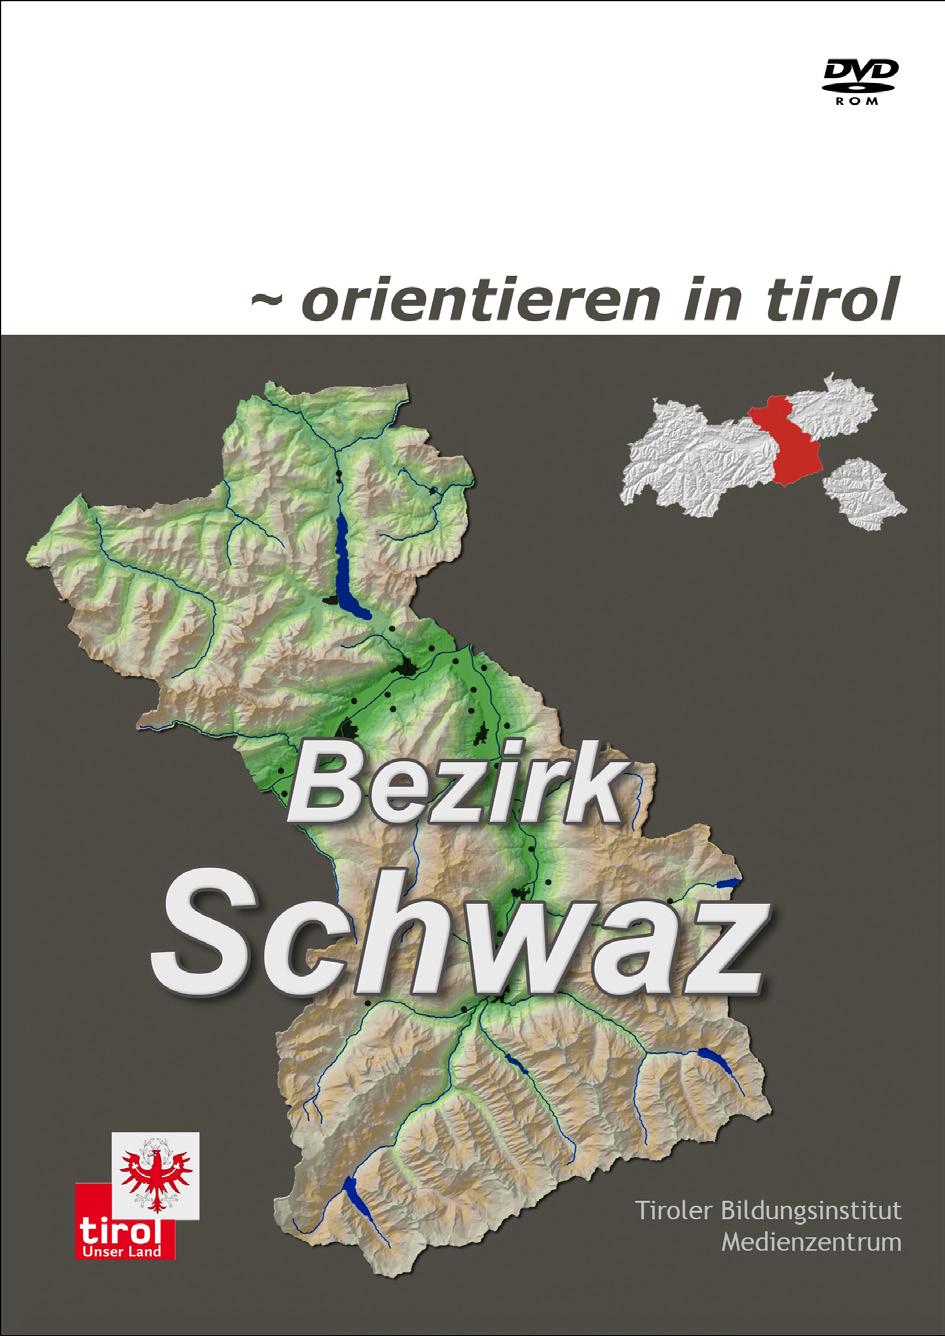 NEUE DVD ÜBER DEN BEZIRK SCHWAZ ERSCHIENEN Orientieren in Tirol Bezirk Schwaz heißt die neue DVD, die vom Tiroler Bildungsinstitut-Medienzentrum für den Einsatz in der Volksschule produziert wurde.